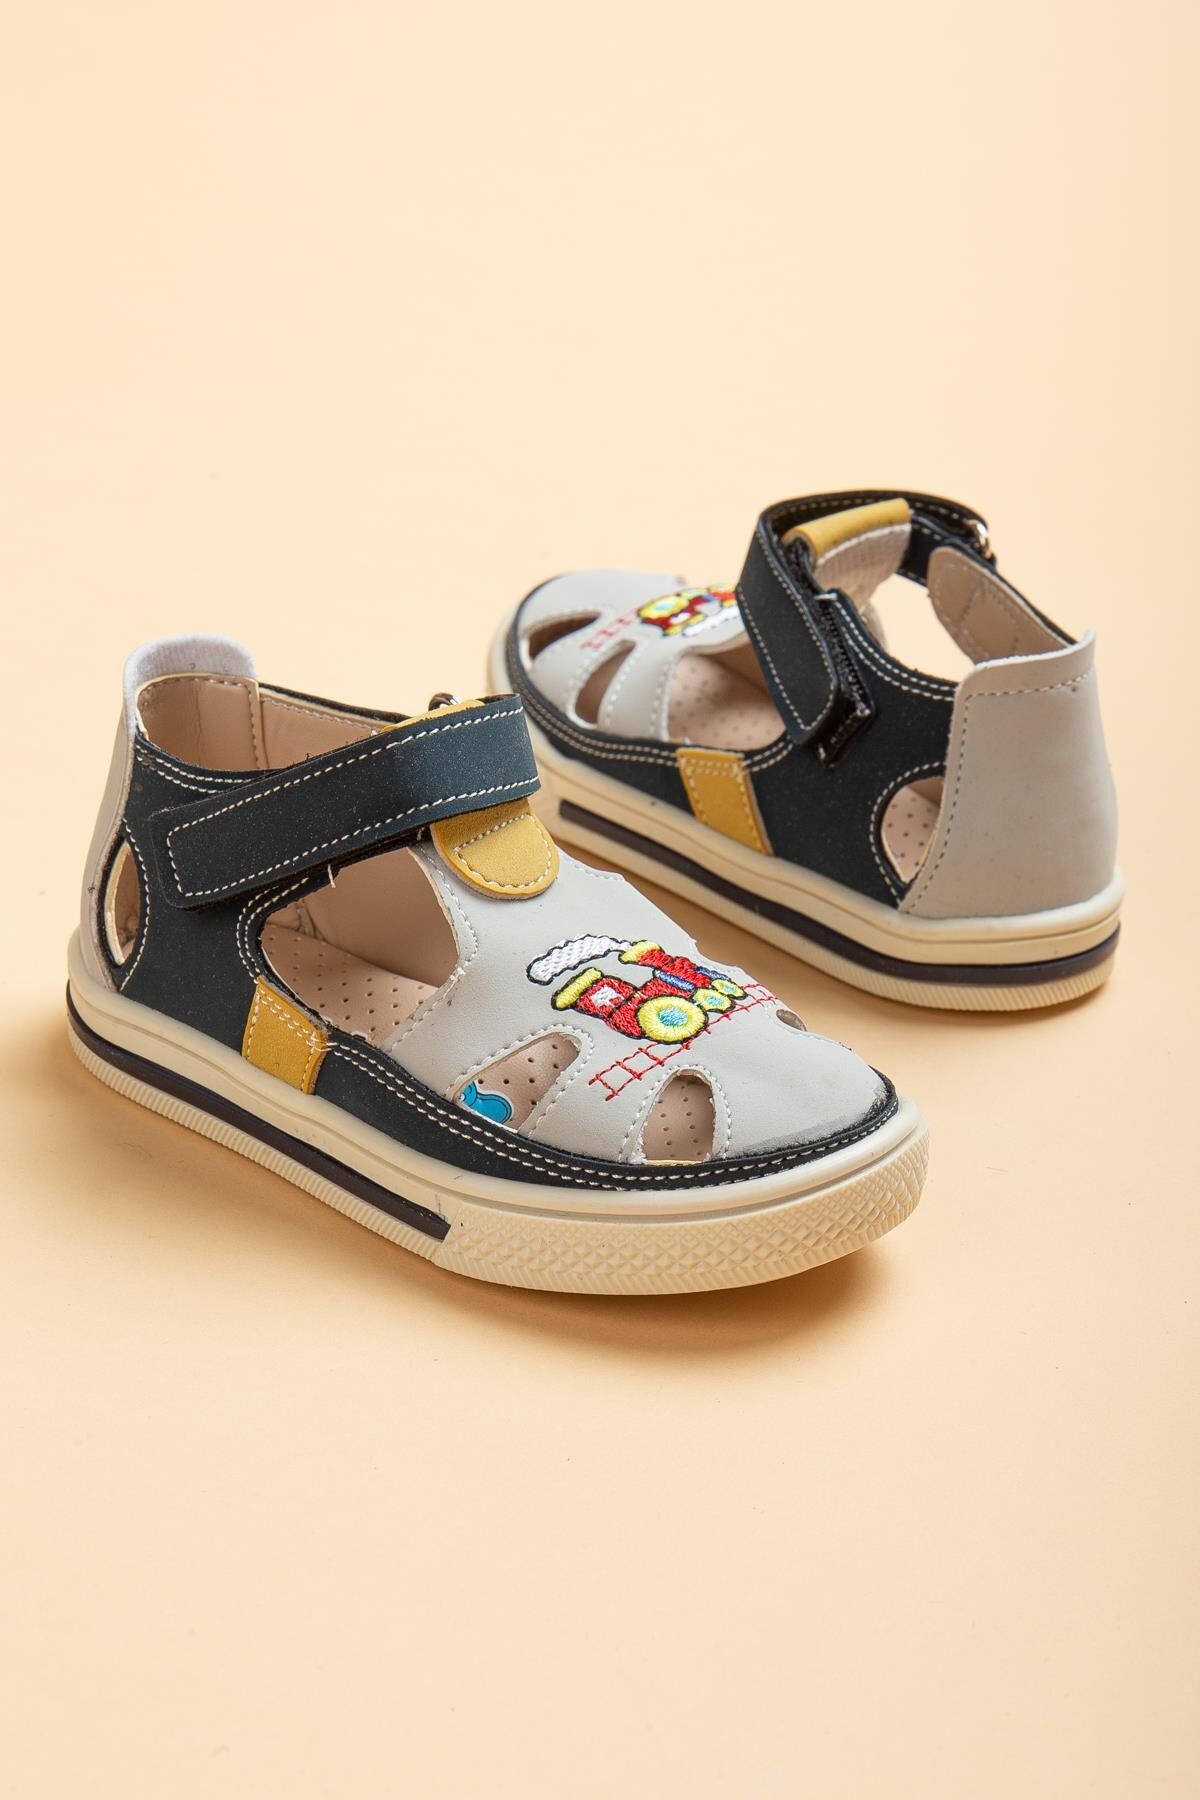 Dilimler Ayakkabı Şirinbebe Şiringenç Figürlü Model Sarı Erkek Ilkadım Bebek Çocuk Ayakkabı Sandalet